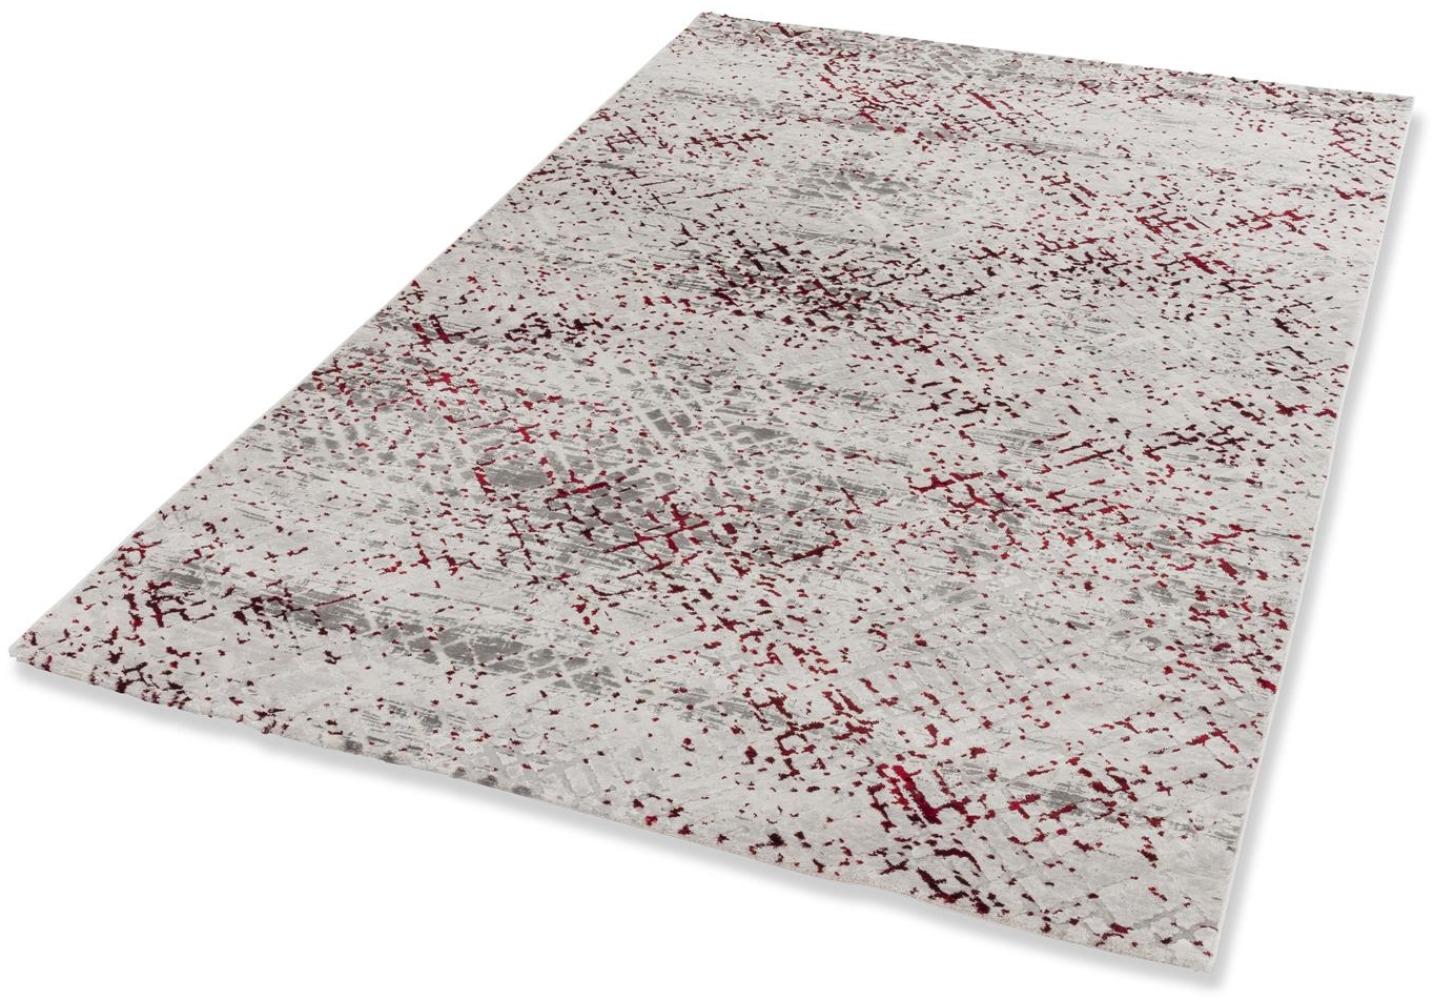 Teppich in rot/creme aus 70% Polyester, 30% Polypropylen - 230x160x0,9cm (LxBxH) Bild 1